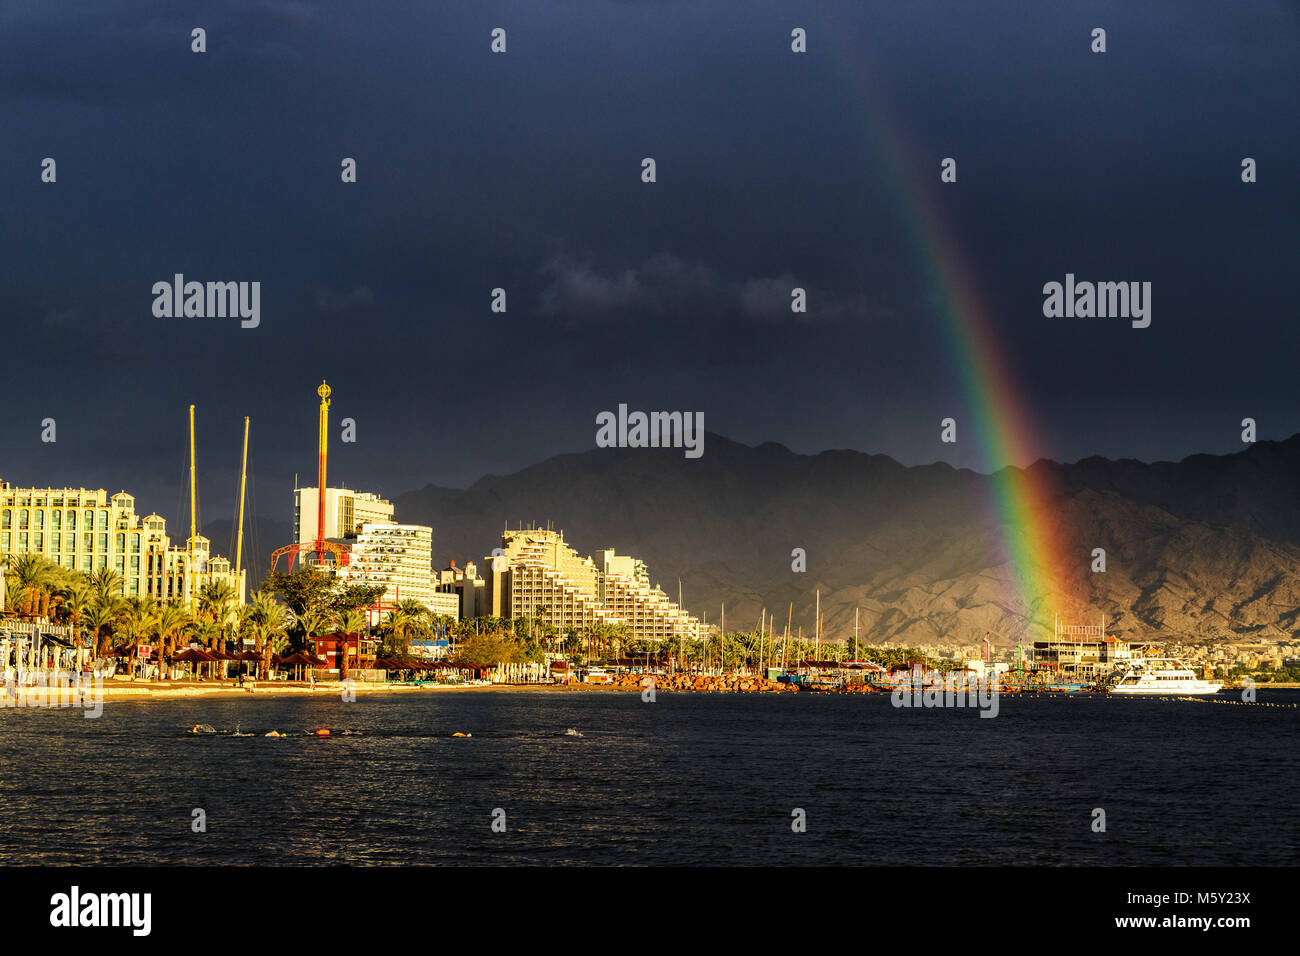 Rainbow und dunkle Regenwolken über aufgehellt Strand und Hotels in Eilat, Israel. Golf von Aqaba am Roten Meer. Schwimmer Training für nächsten Tag Ironman Rennen Stockfoto